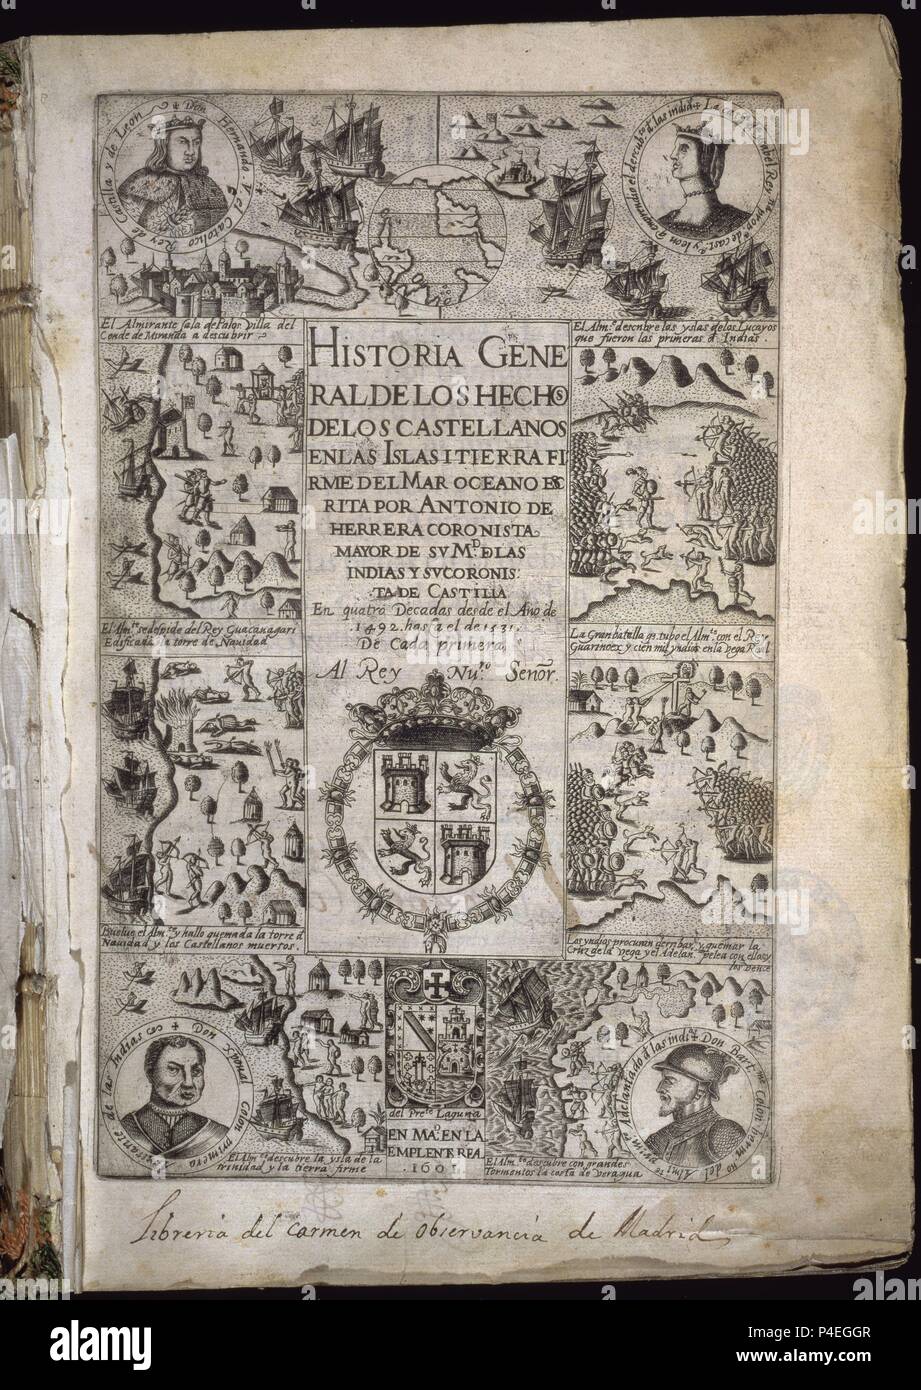 HISTORIA GENERAL DE LOS HECHOS CASTELLANOS EN ISLAS Y TIERRA FIRME DE LAS INDIAS - DECADA I - MADRID - 1601 - RETRATO DE COLON ABAJO A LA IZQUIERDA. Author: Antonio Herrera y Tordesillas (1549-1625). Location: CONGRESO DE LOS DIPUTADOS-BIBLIOTECA, MADRID, SPAIN. Stock Photo